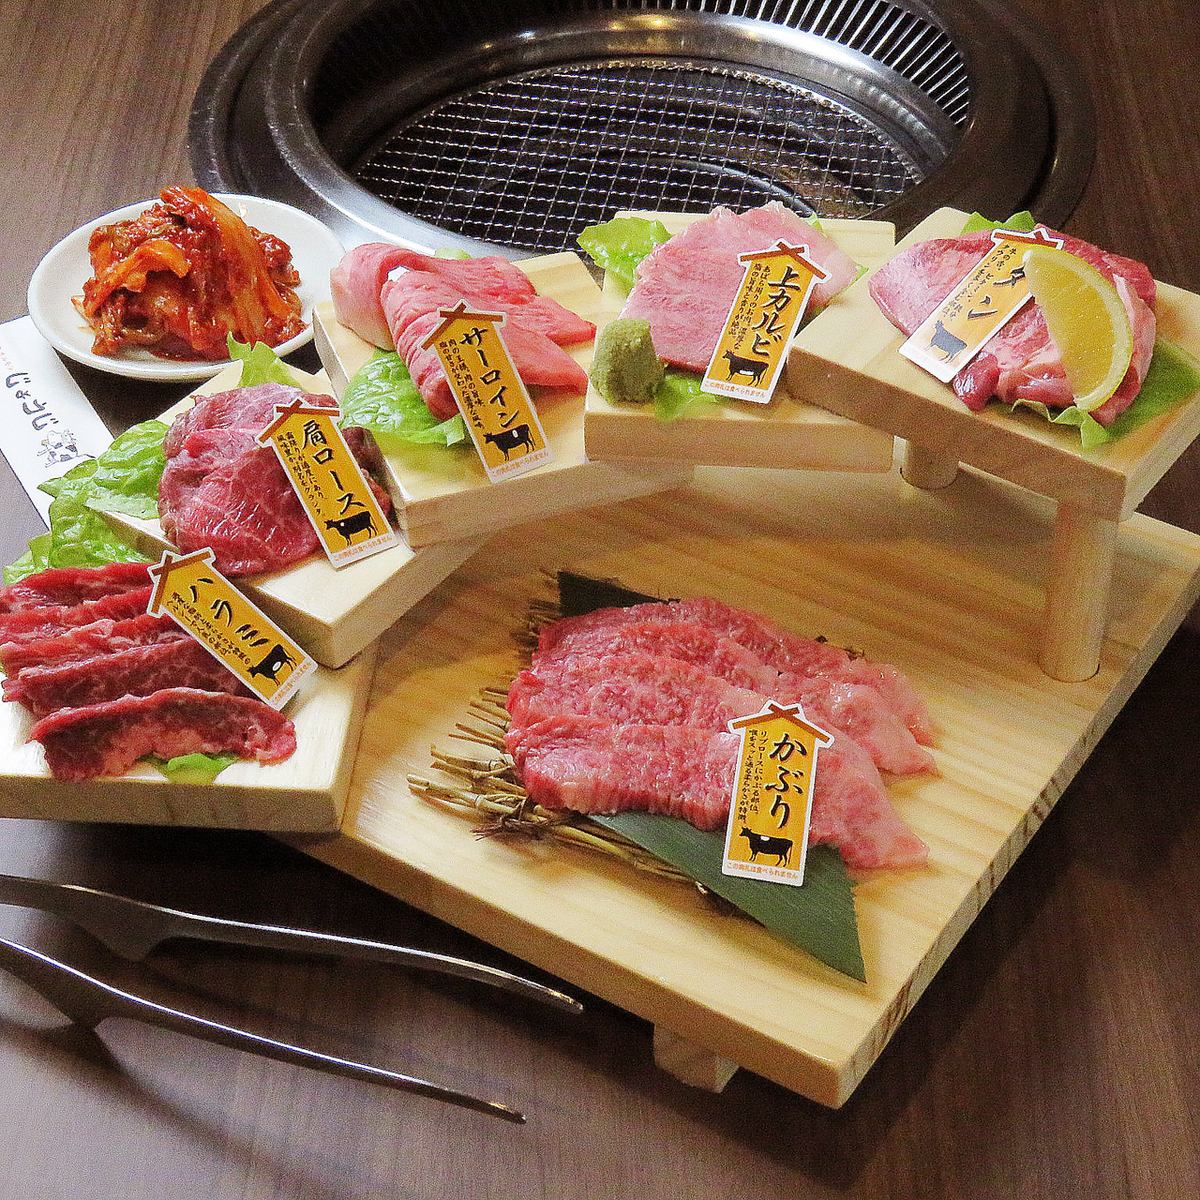 請享用精選的日本牛肉和激素。